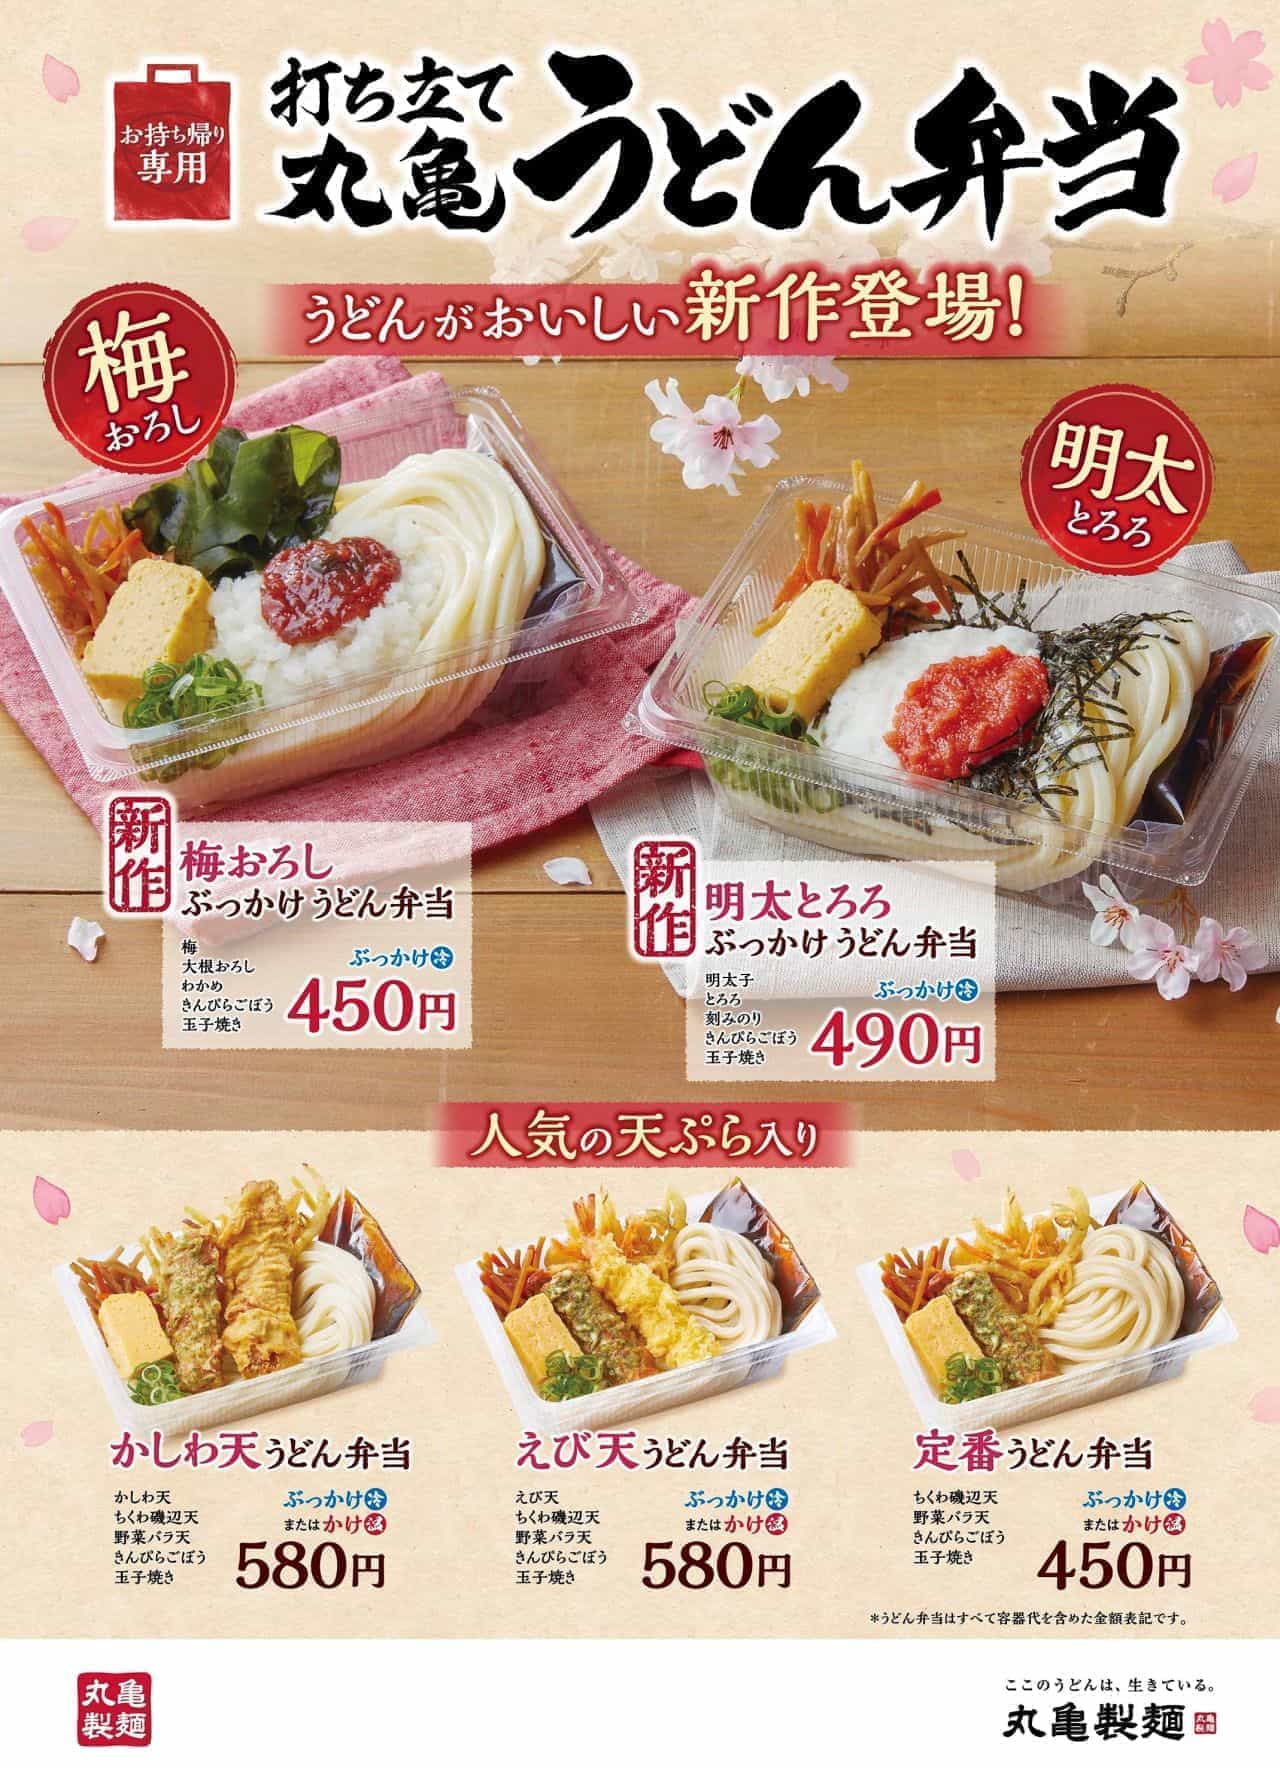 Marugame Seimen "Ume Ume Oroshi Bukkake Udon Lunchbox" and "Mentaiko Tororo Bukkake Udon Lunchbox